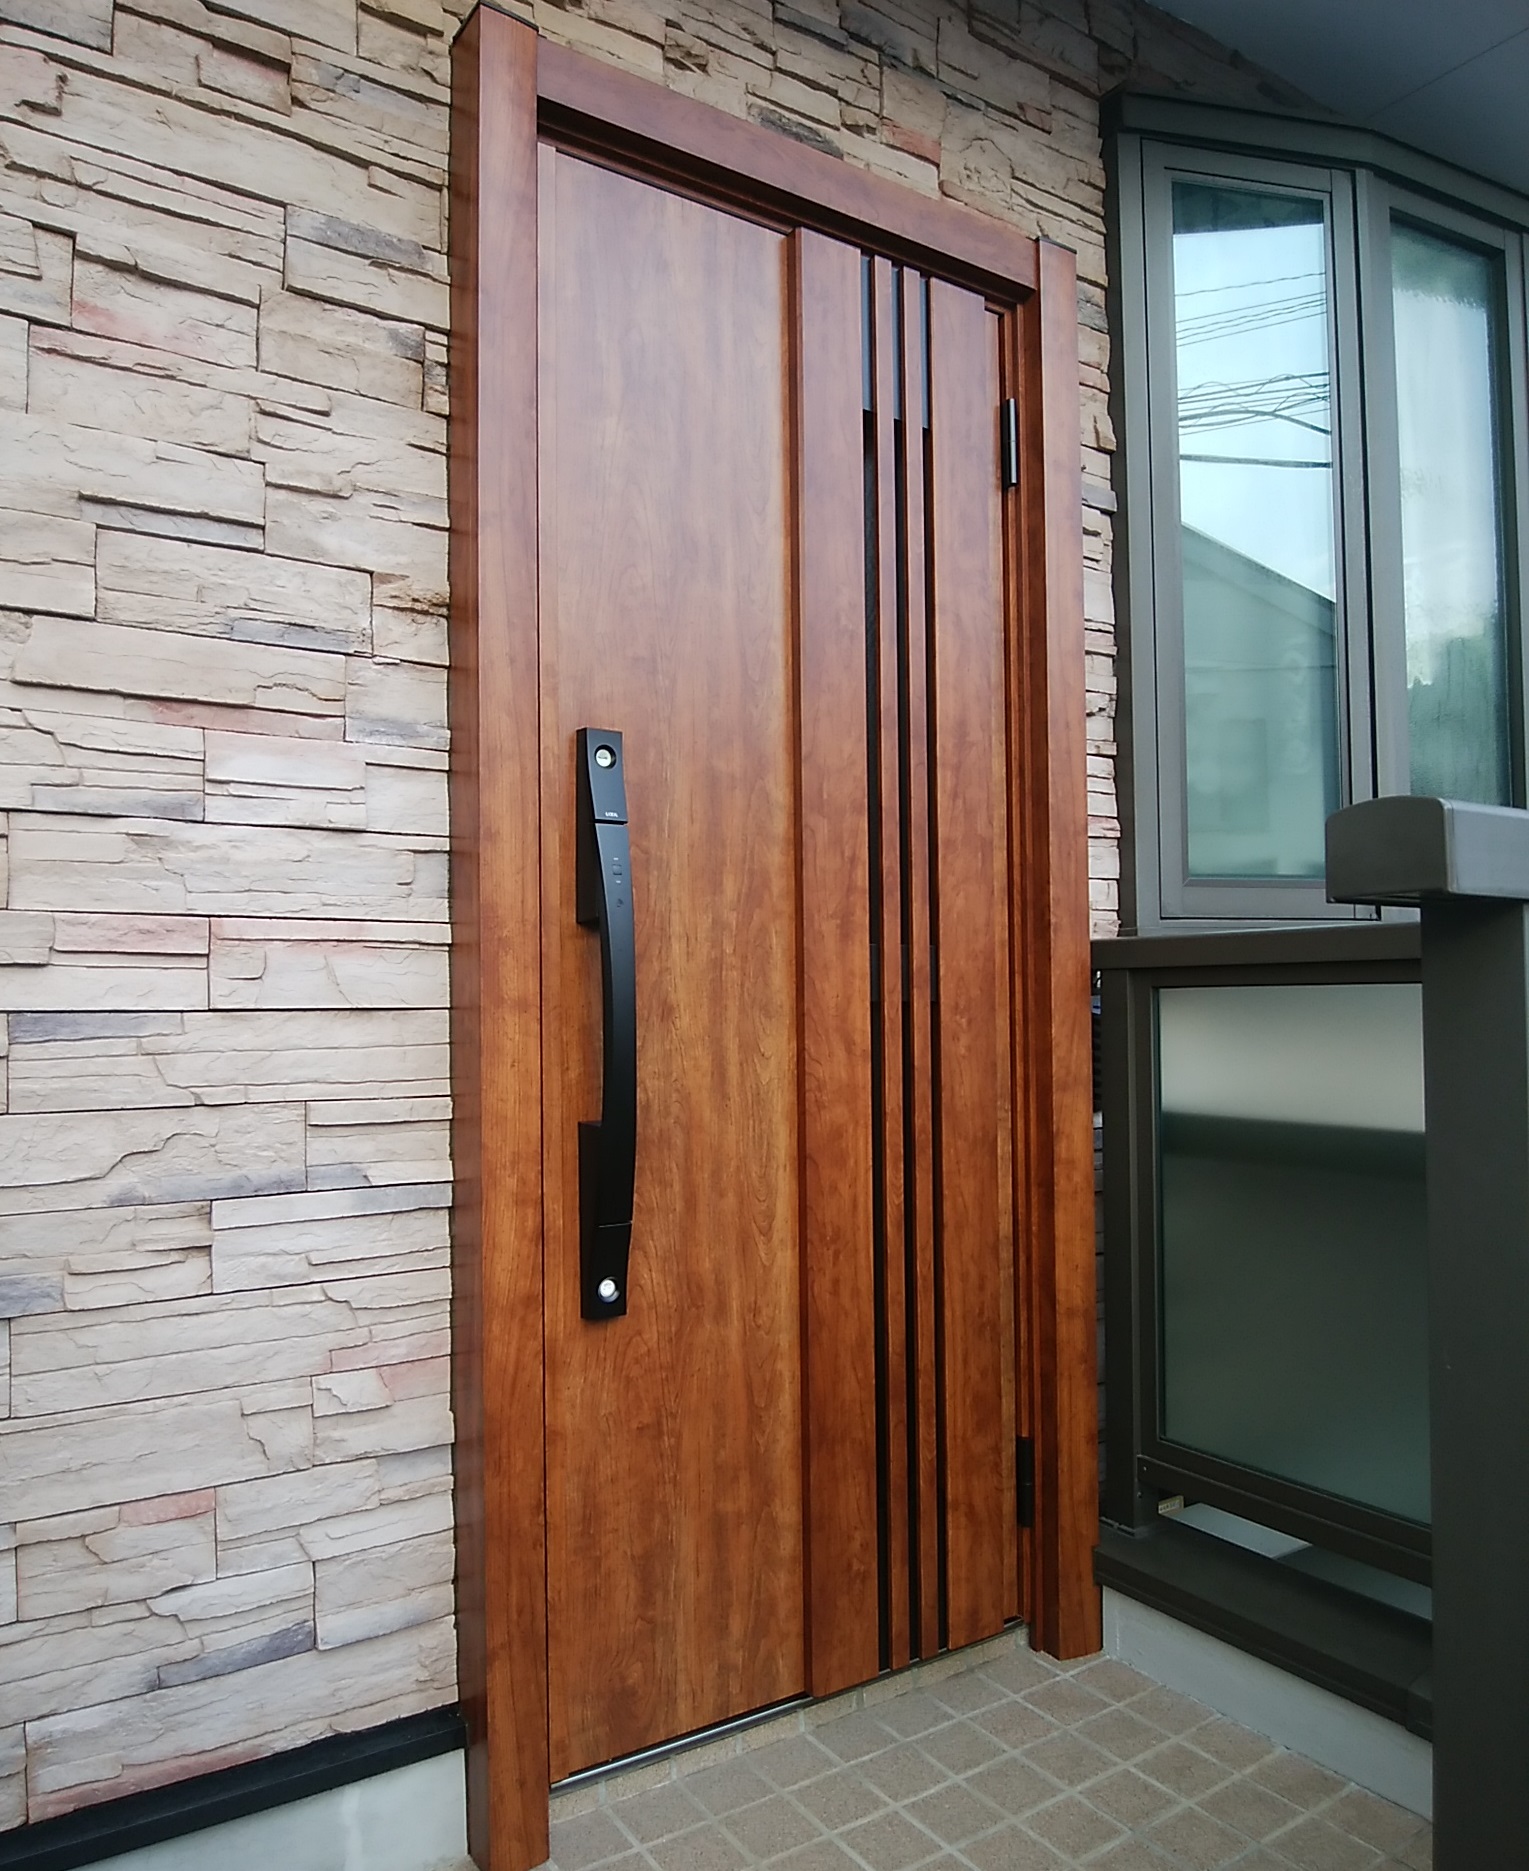 木目調の玄関ドアに交換するとこんなに高級感が出ます 東京都江戸川区の工事事例 Lixilリシェントm型 玄関ドアのリフォームなら玄関ドア マイスターへお任せください